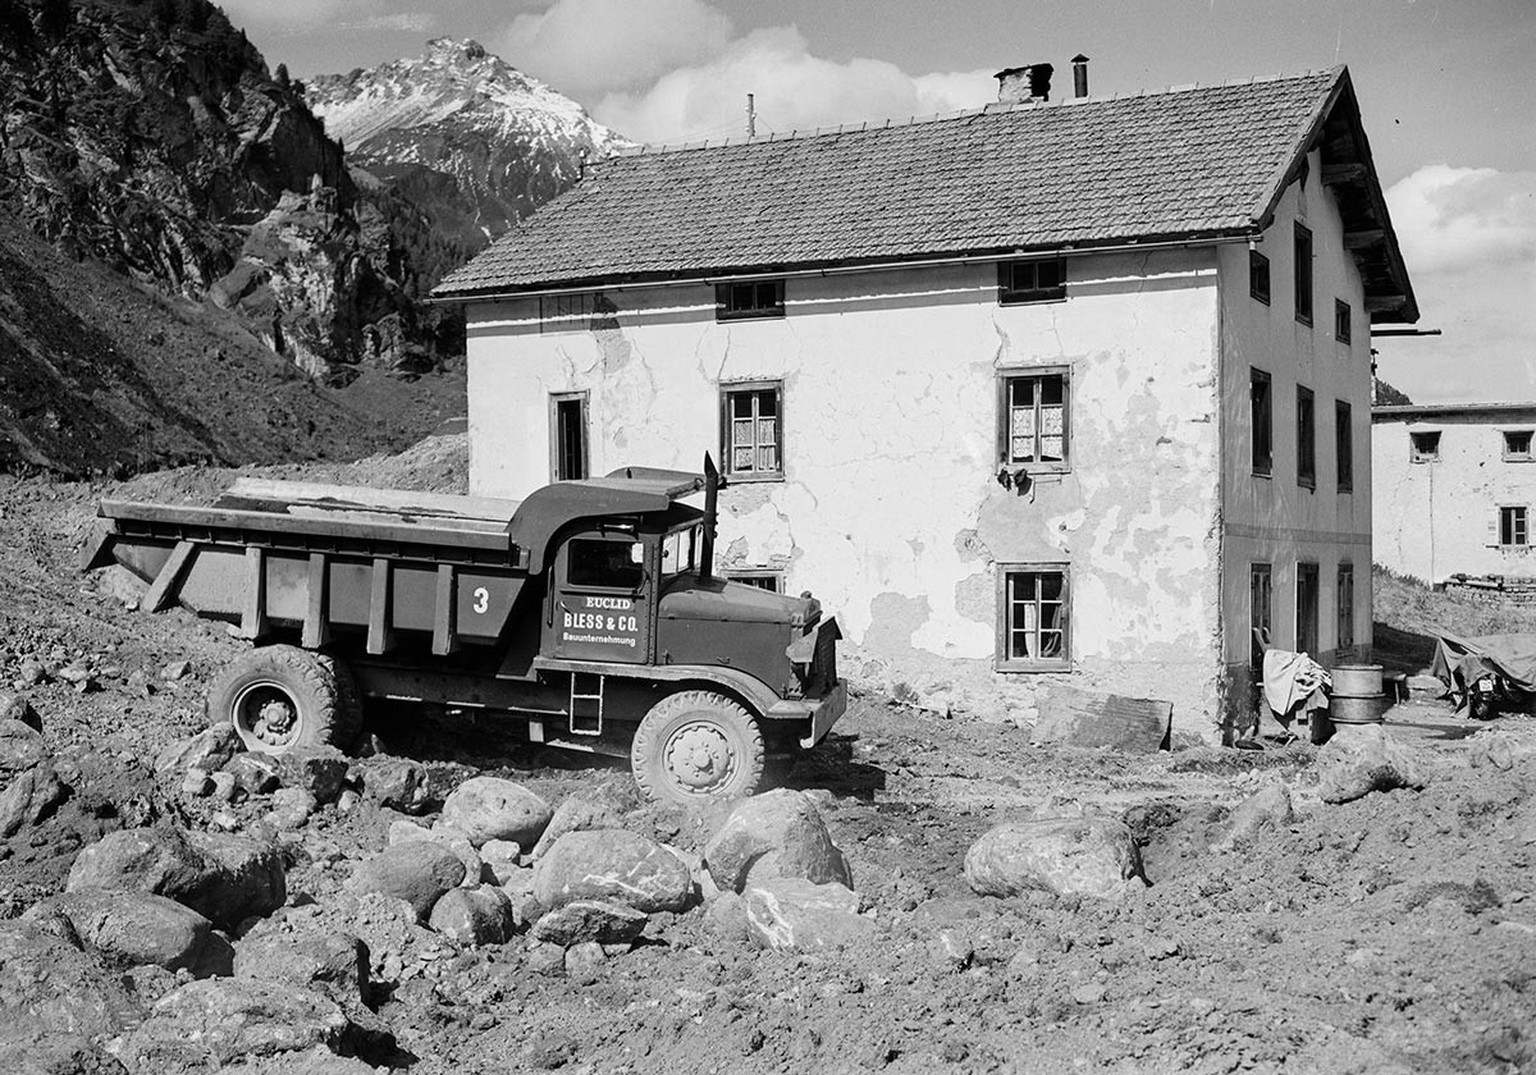 Umsiedlungsaktion von Marmorera. Das Bild wurde 1952 aufgenommen.
https://ba.e-pics.ethz.ch/catalog/ETHBIB.Bildarchiv/r/746622/viewmode=infoview/qsr=marmorera